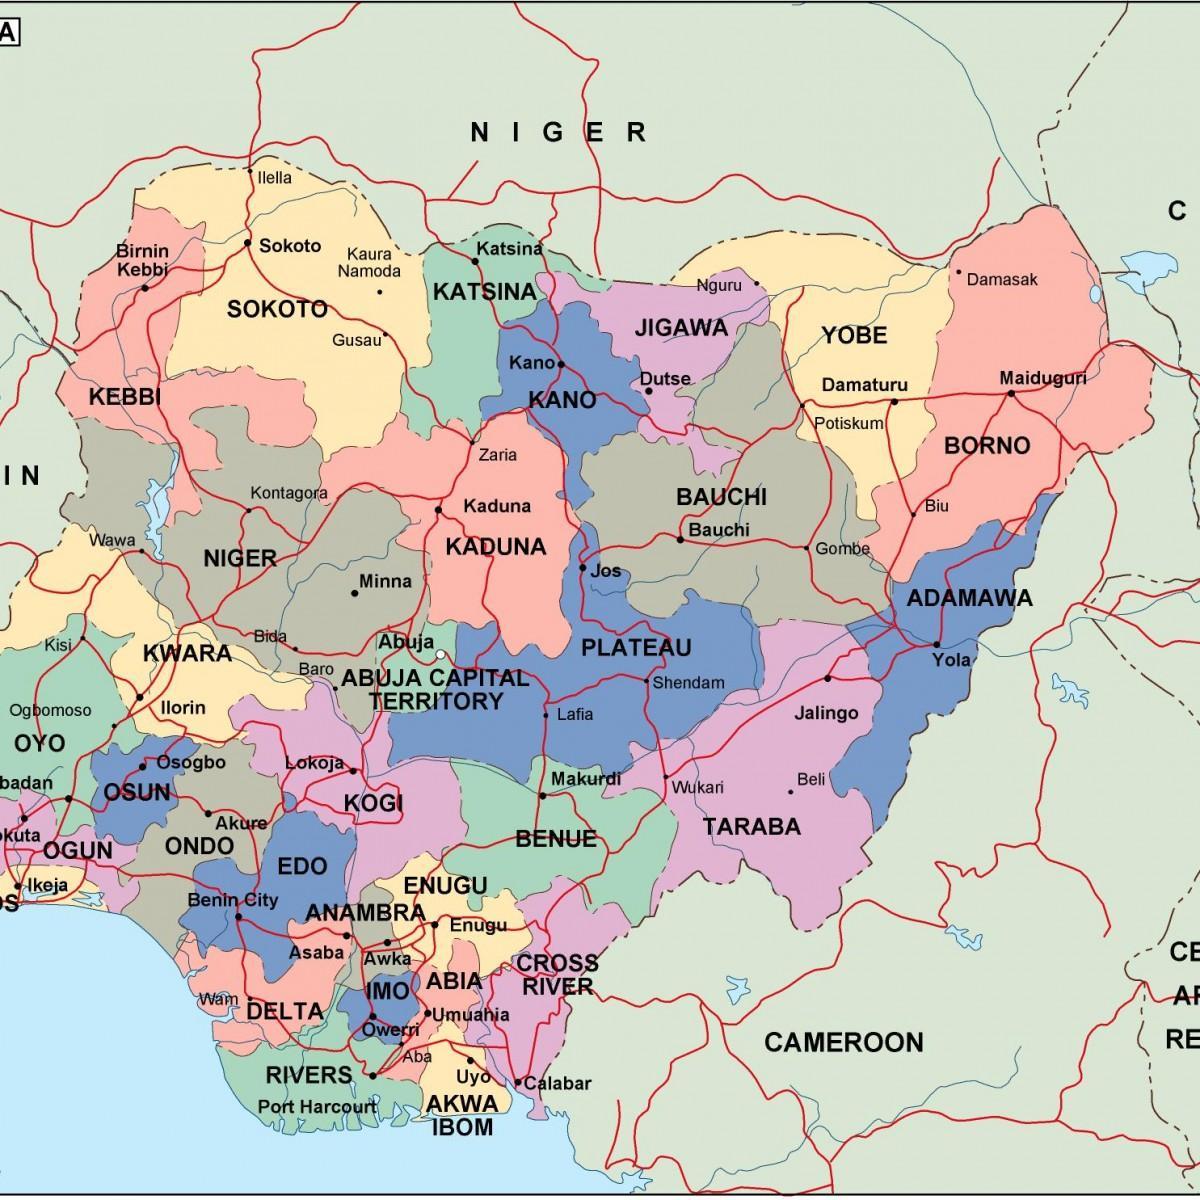 Peta dari nigeria dengan negara-negara dan kota-kota